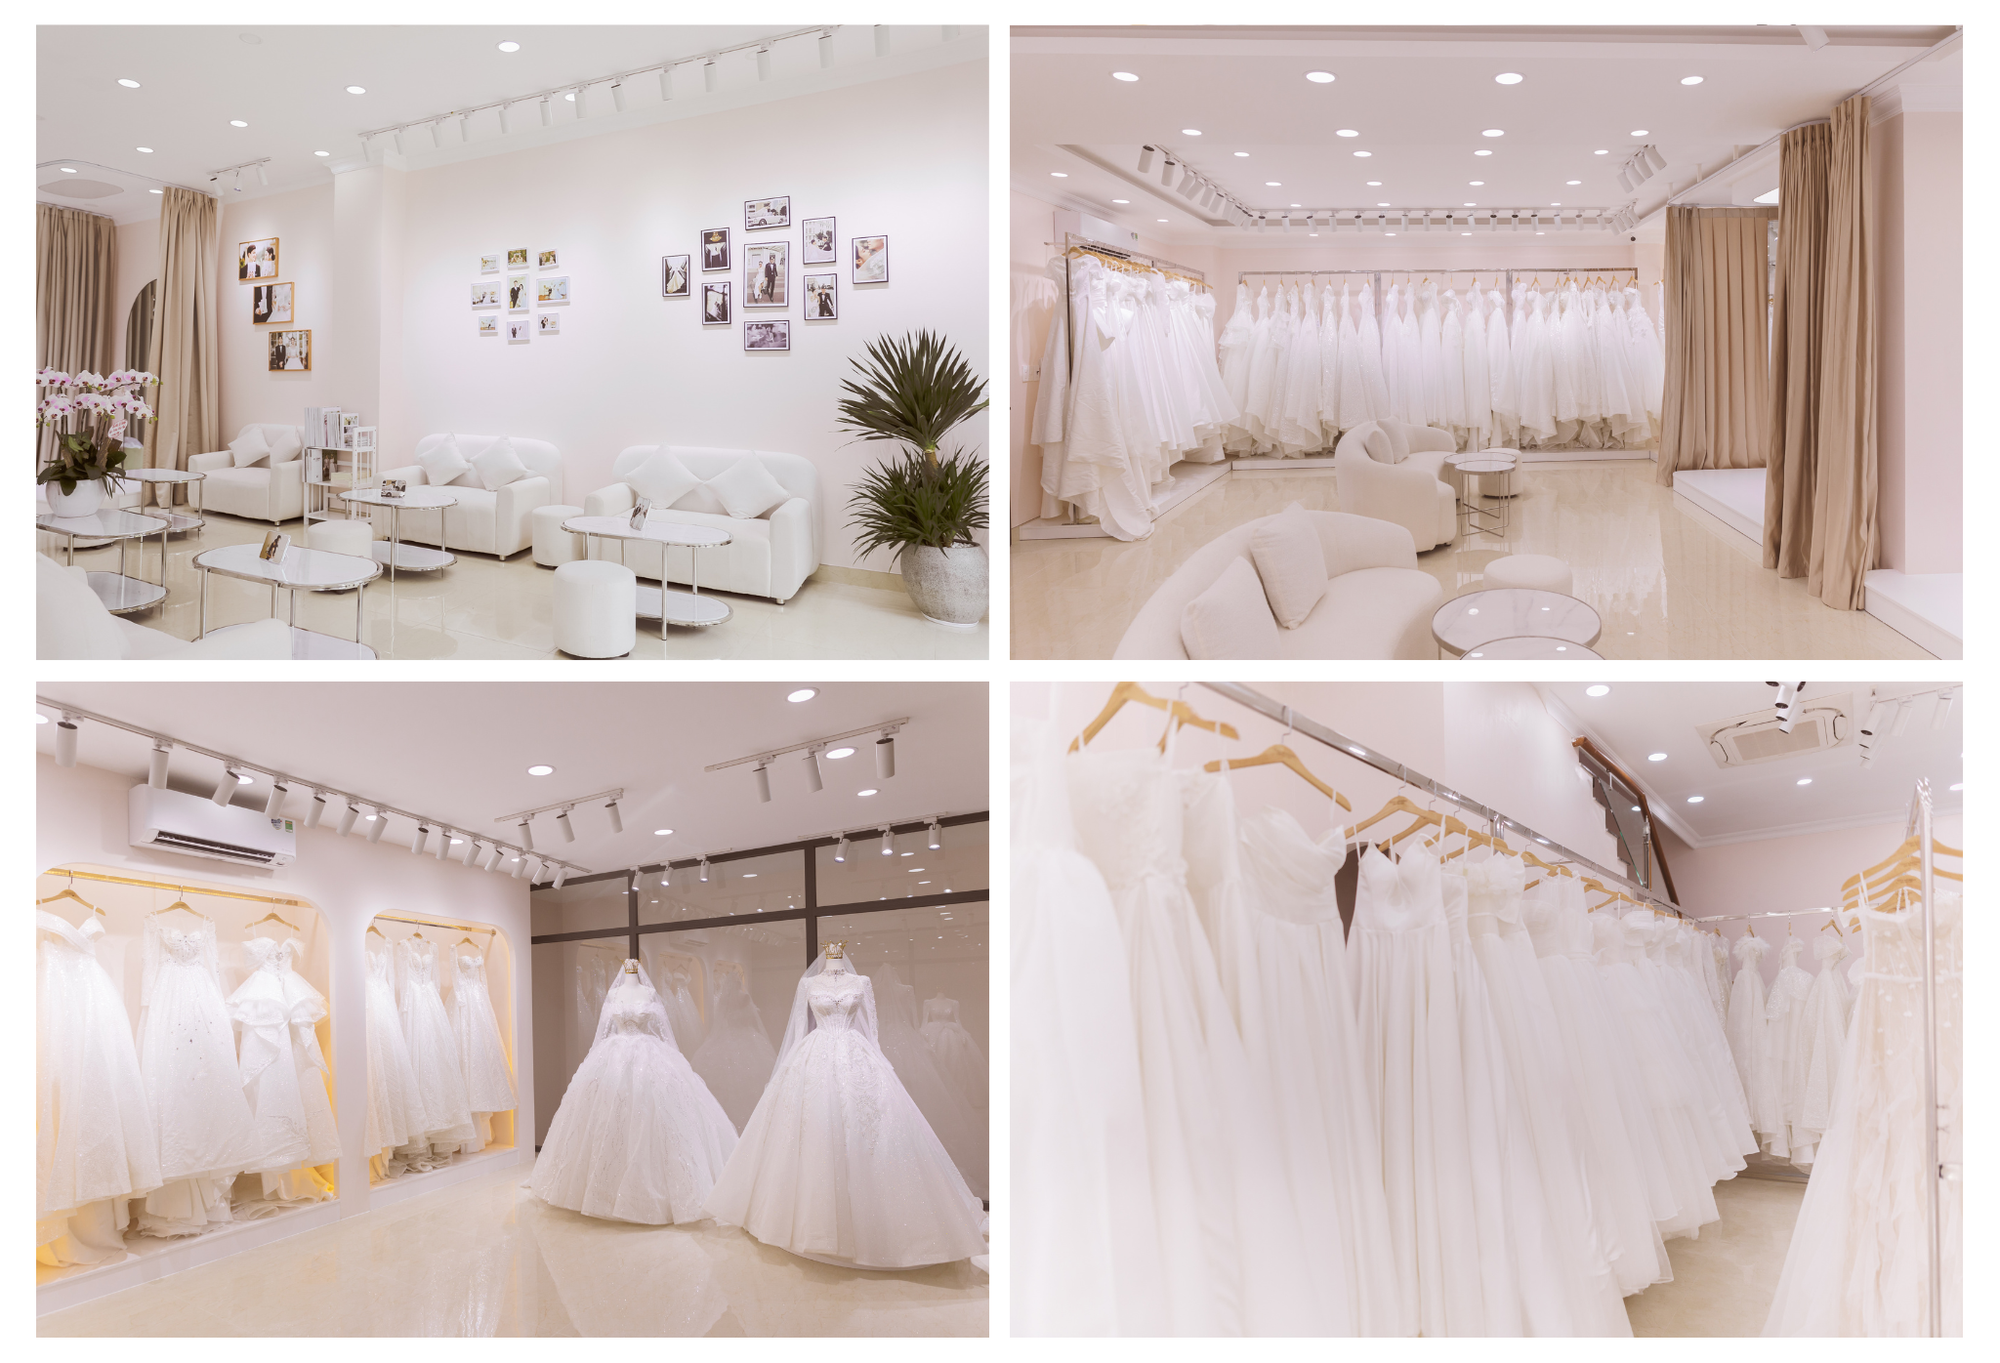 Tony Wedding - Studio chụp ảnh cưới Hàn Quốc vừa khai trương chi nhánh mới Gò Vấp - Ảnh 1.